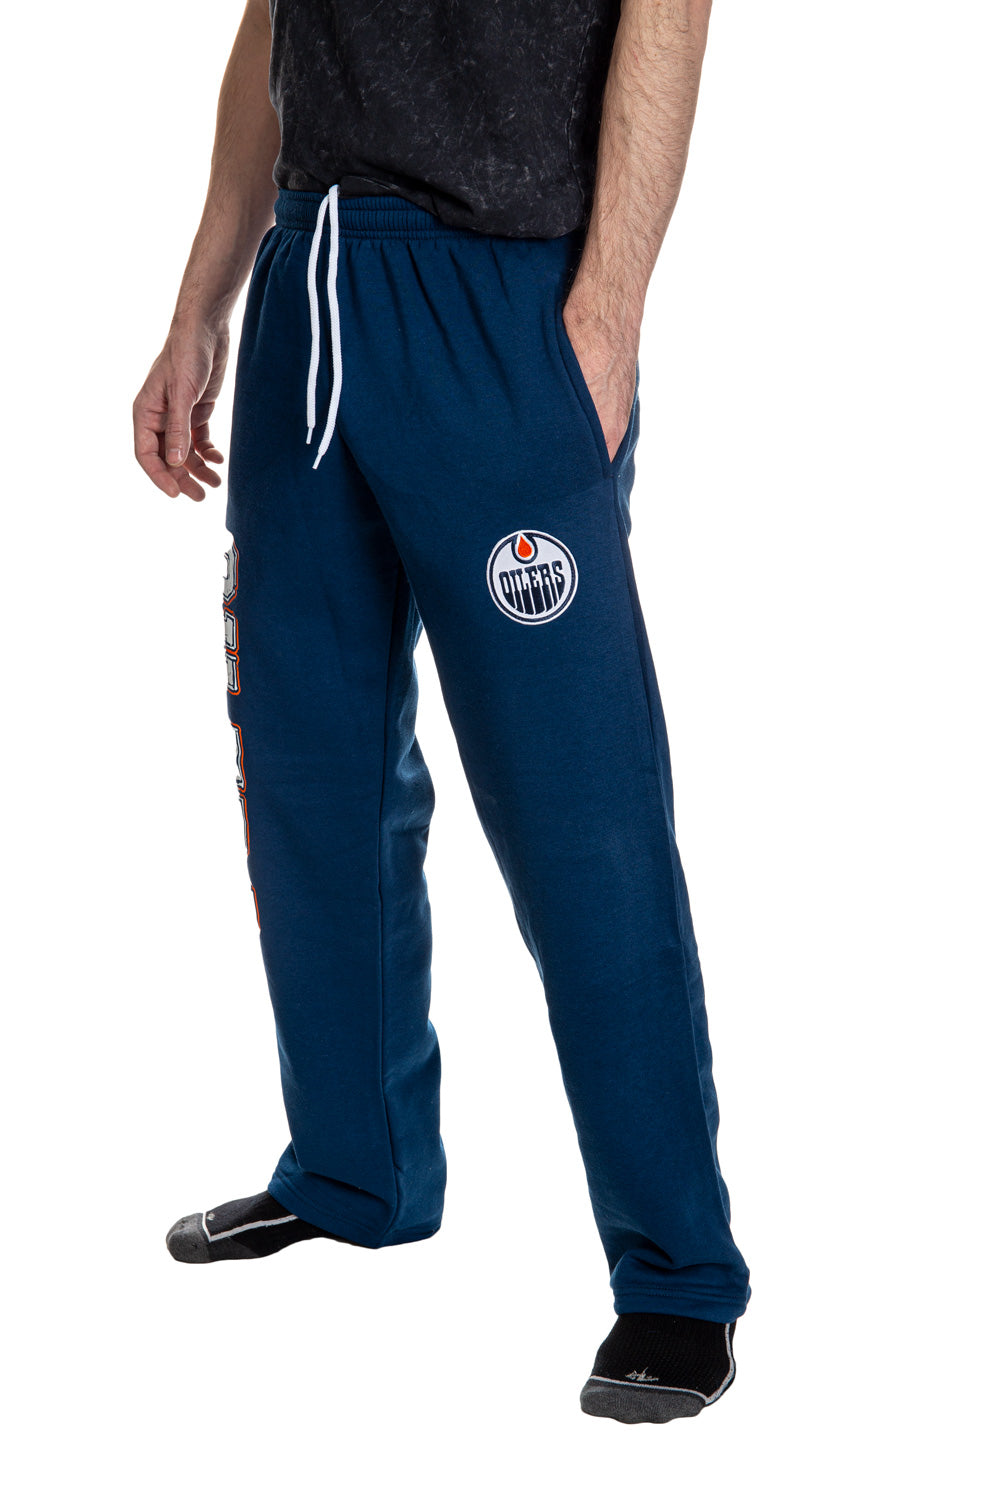 Edmonton Oilers Logo NHL Teams Hoodie And Pants For Fans Custom